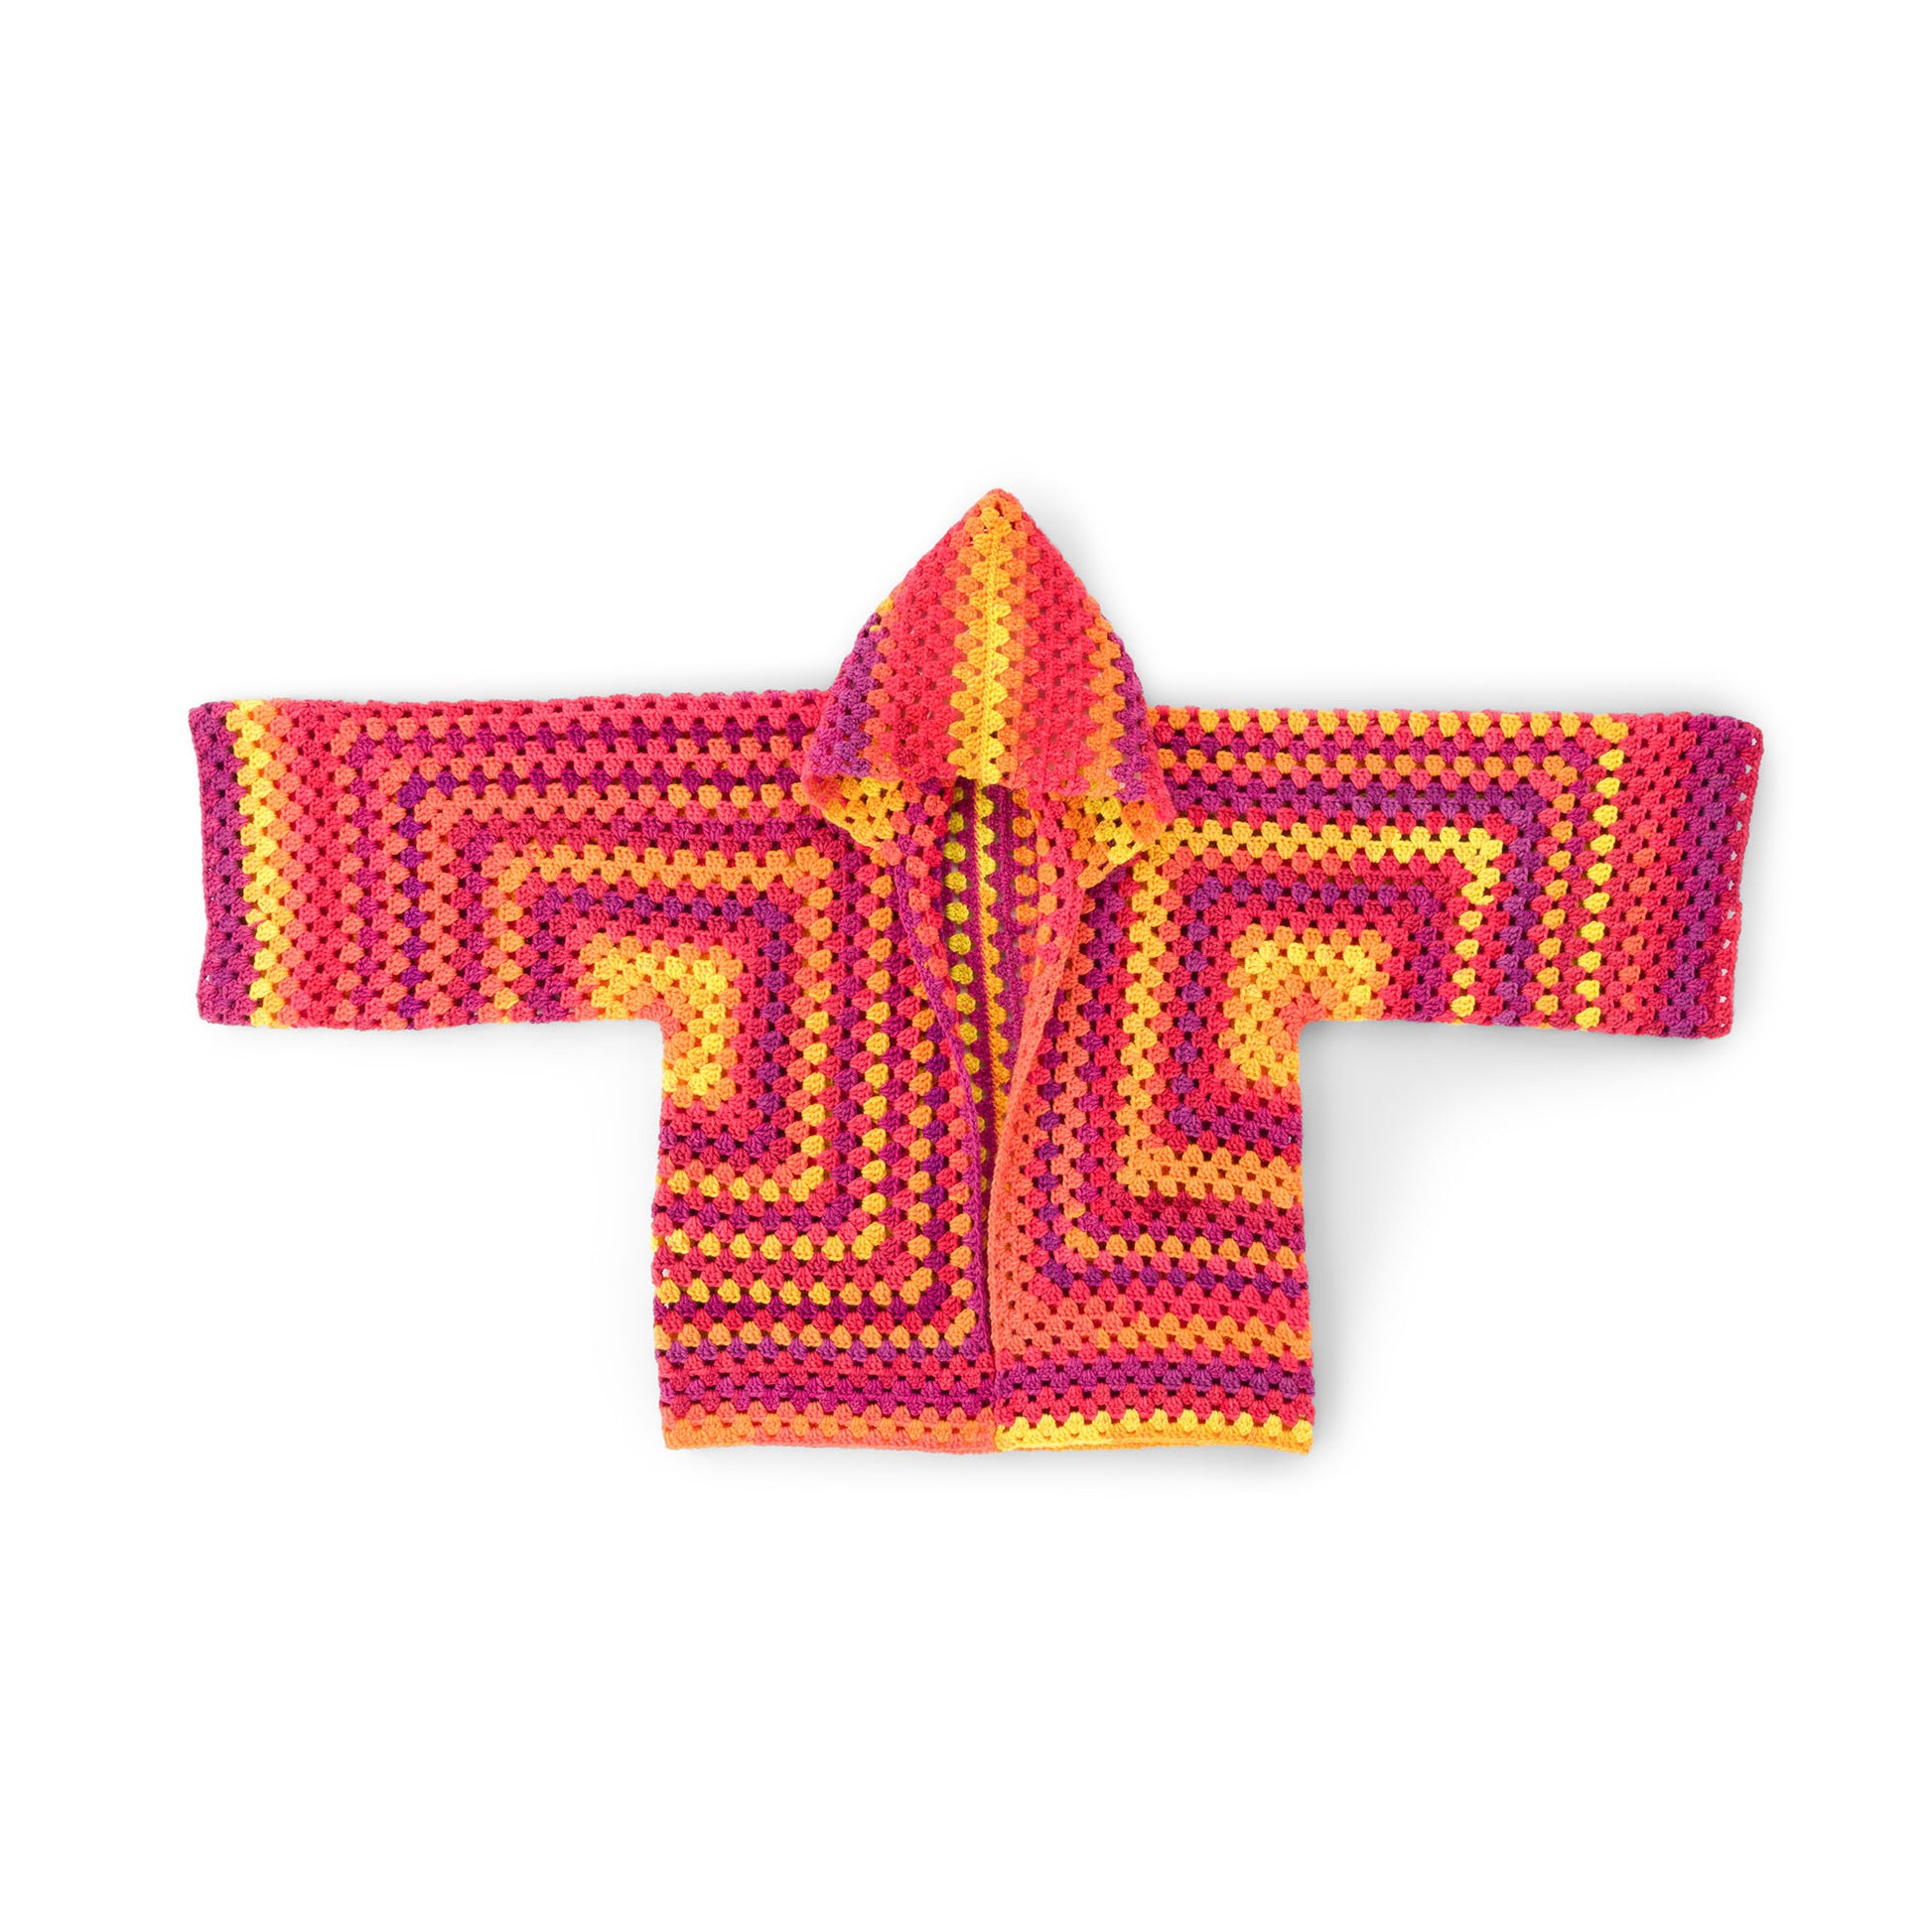 Free Red Heart Crochet Long Hooded Hexi Cardi Pattern